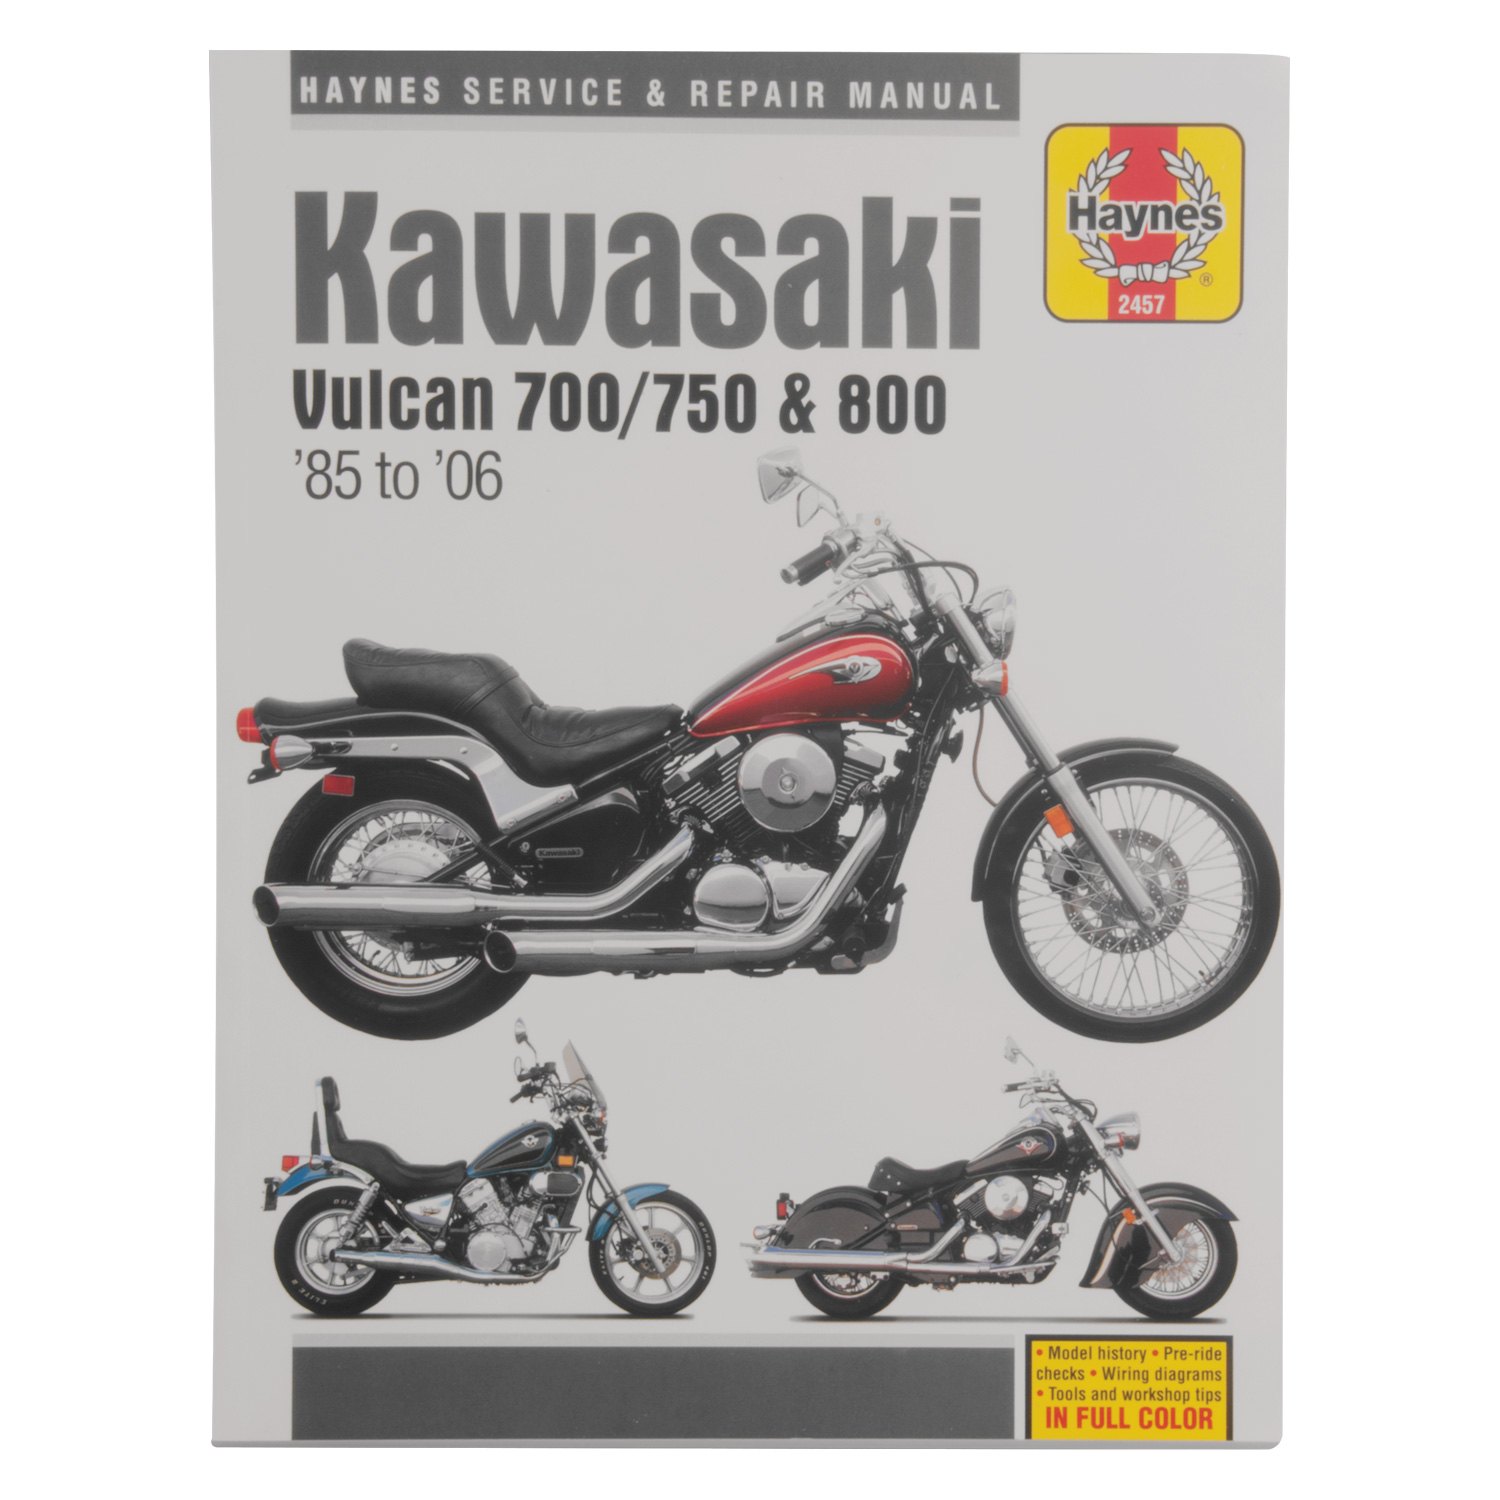 konsulent idiom Tidlig Haynes Manuals® M2457 - Kawasaki Vulcan 700, 750 & 800 1985-2004 Repair  Manual - MOTORCYCLEiD.com